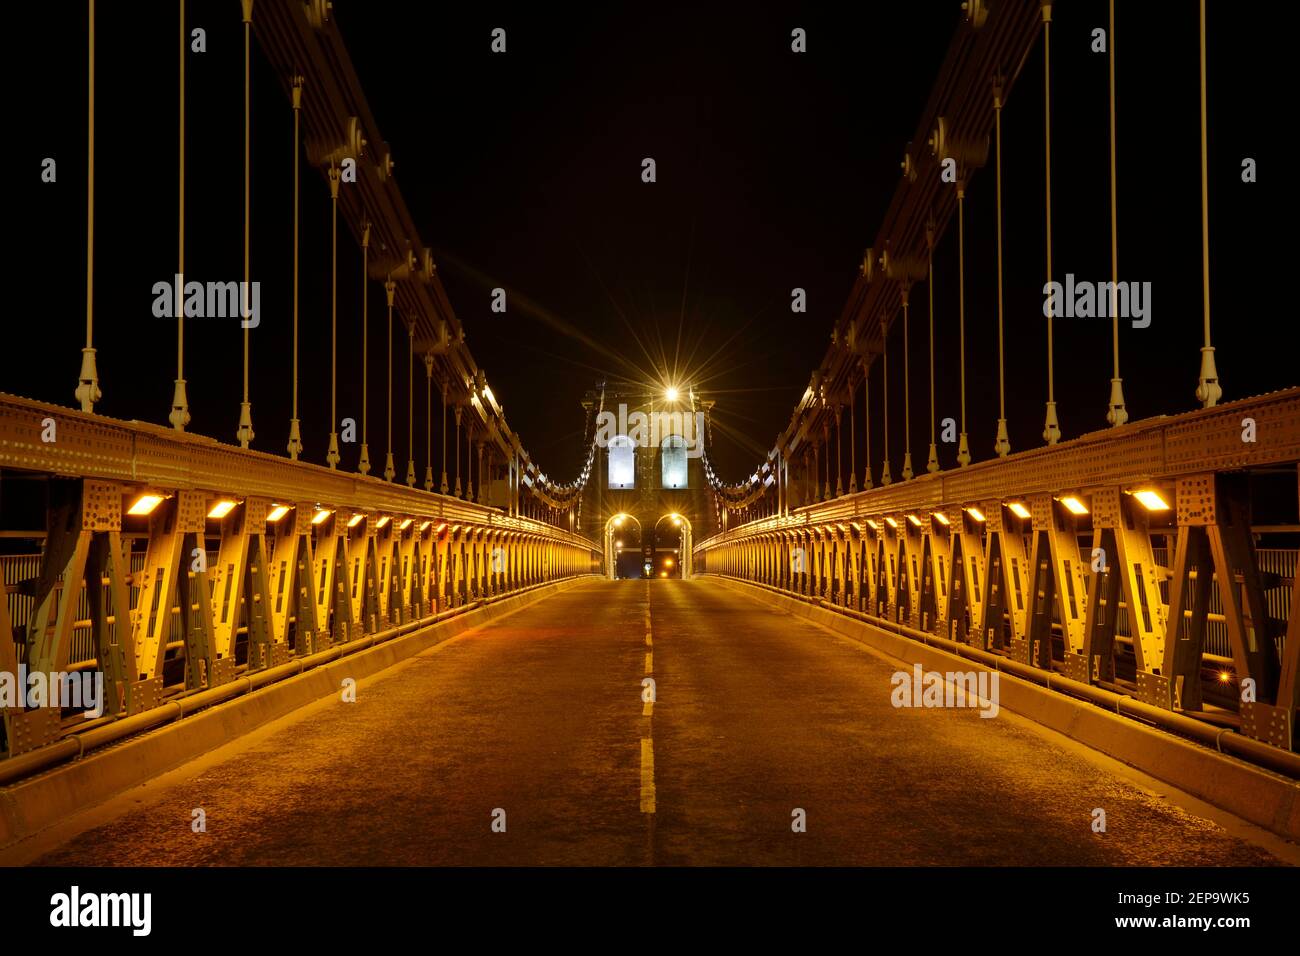 The Menai Bridge, Anglesey, UK, illuminated at night. Stock Photo